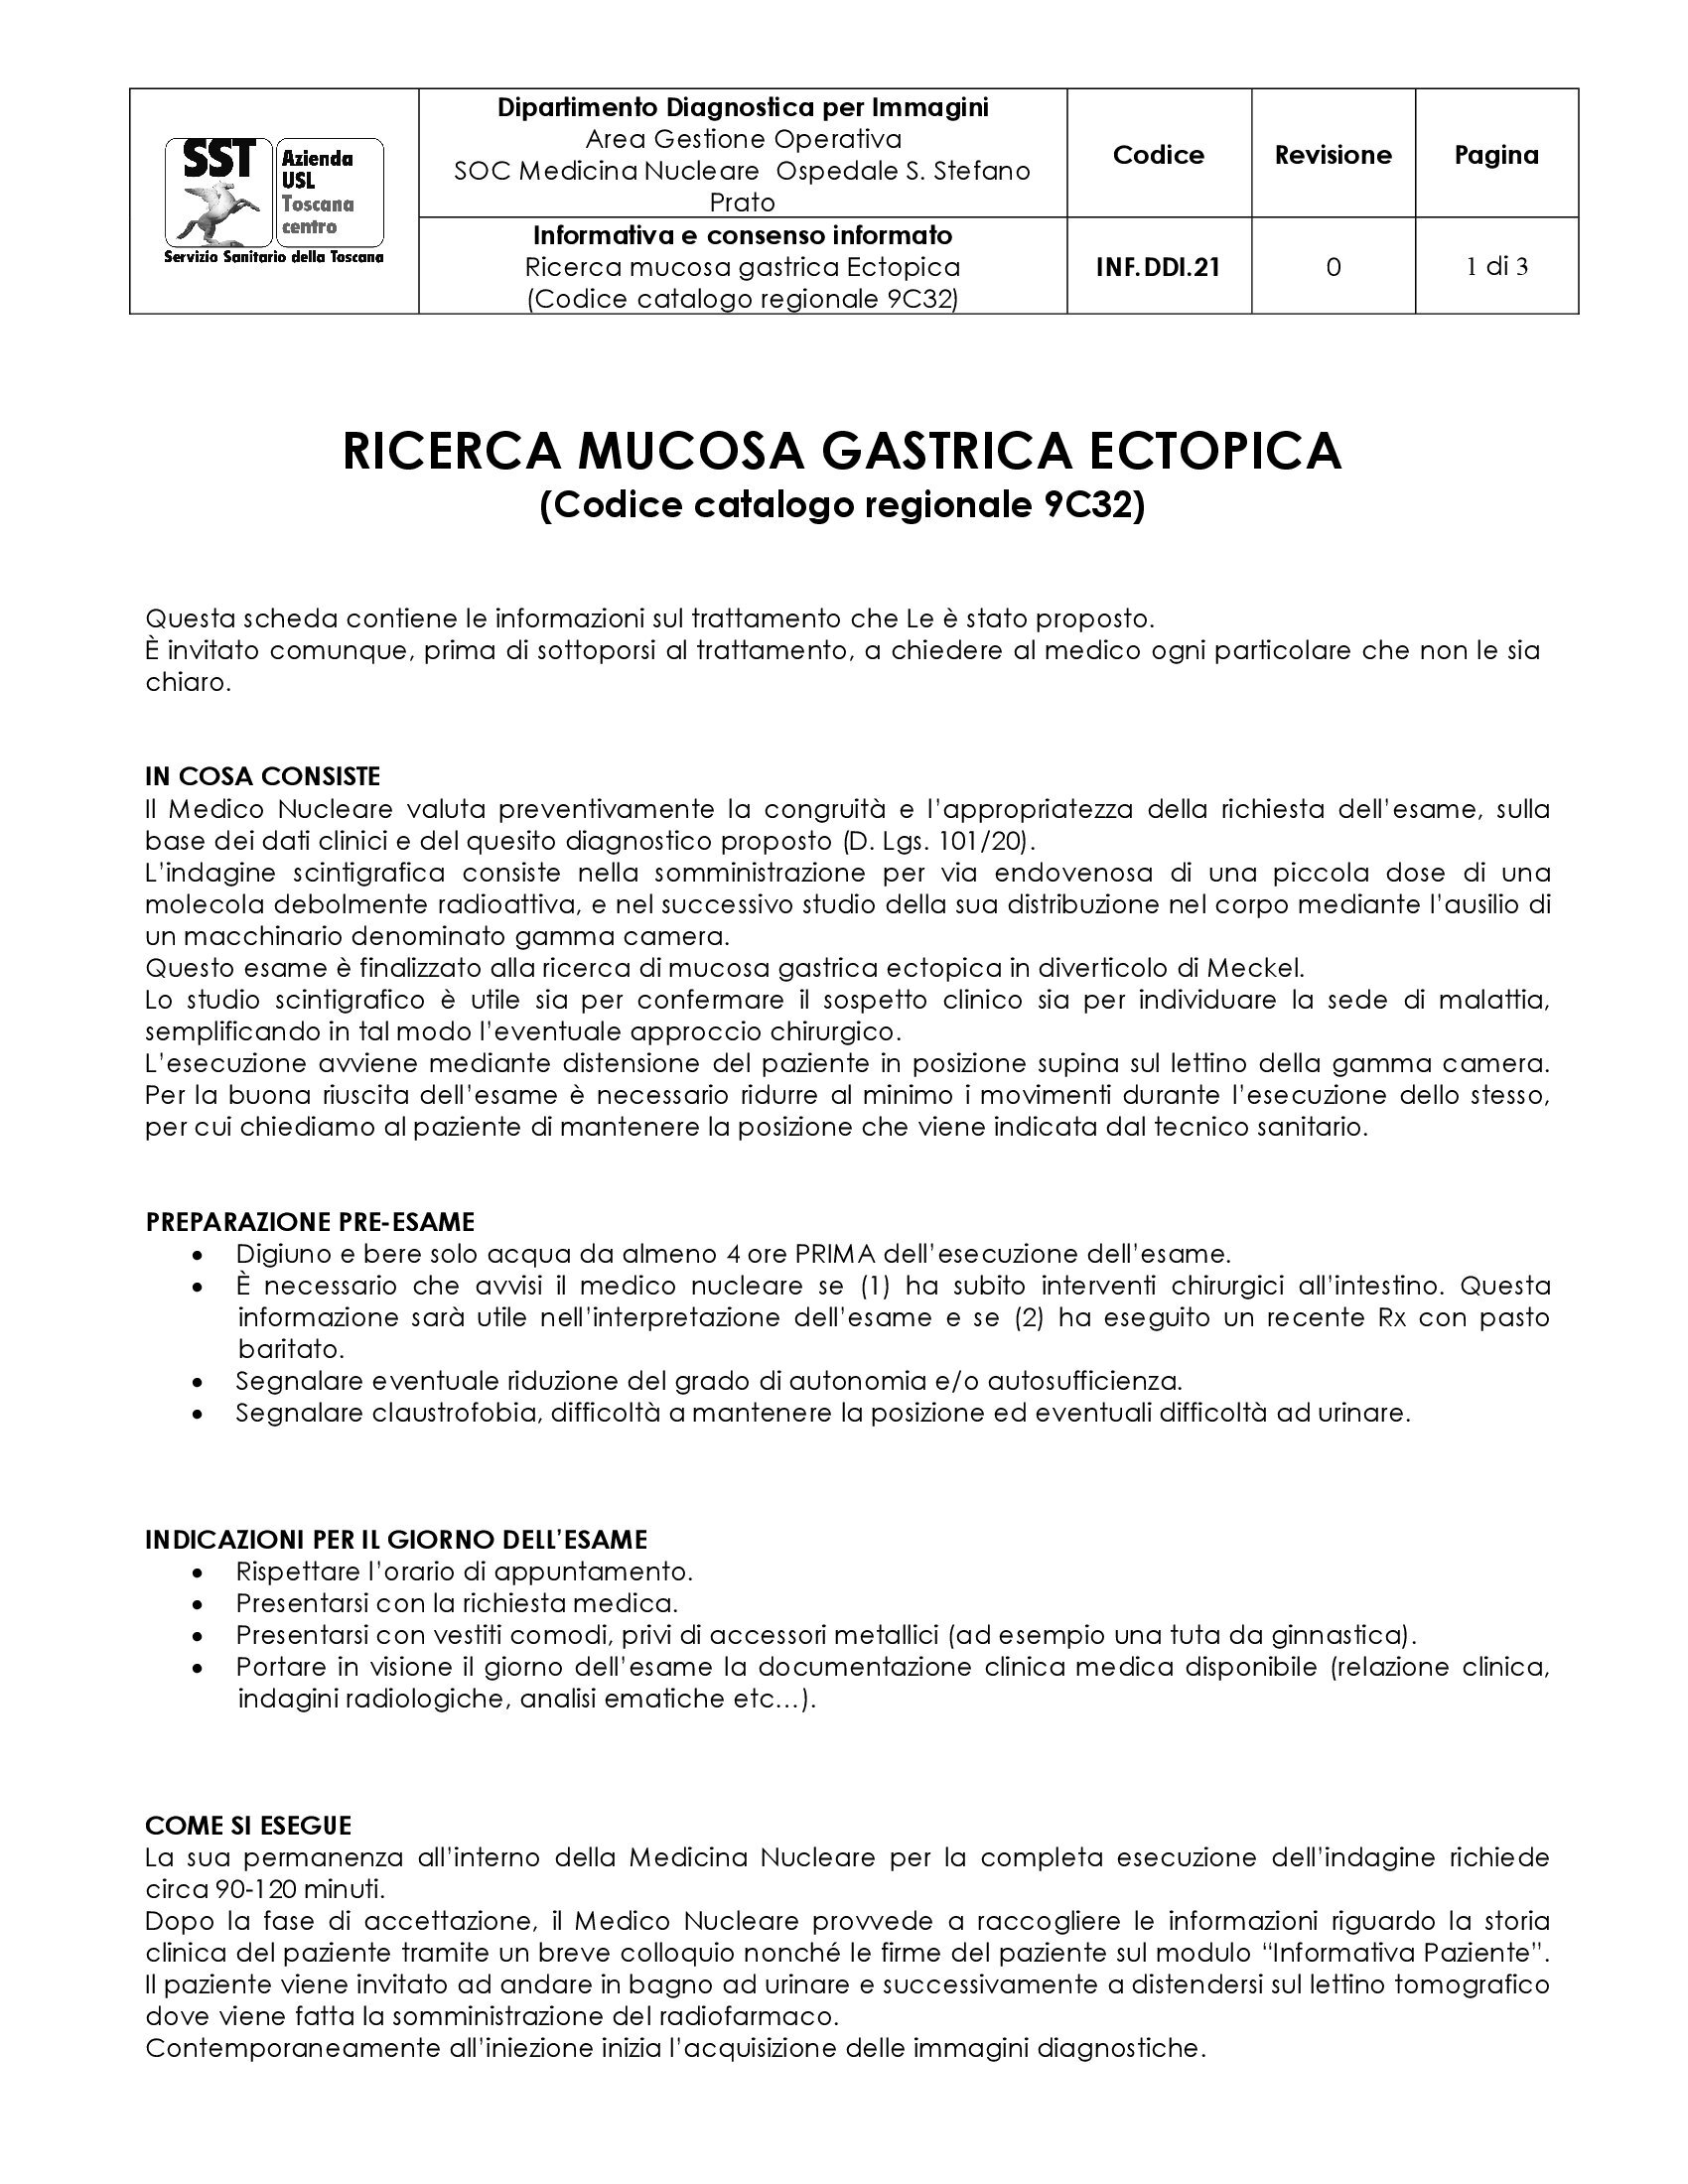 INF.DDI.21 Ricerca mucosa gastrica Ectopica (Codice catalogo regionale 9C32)